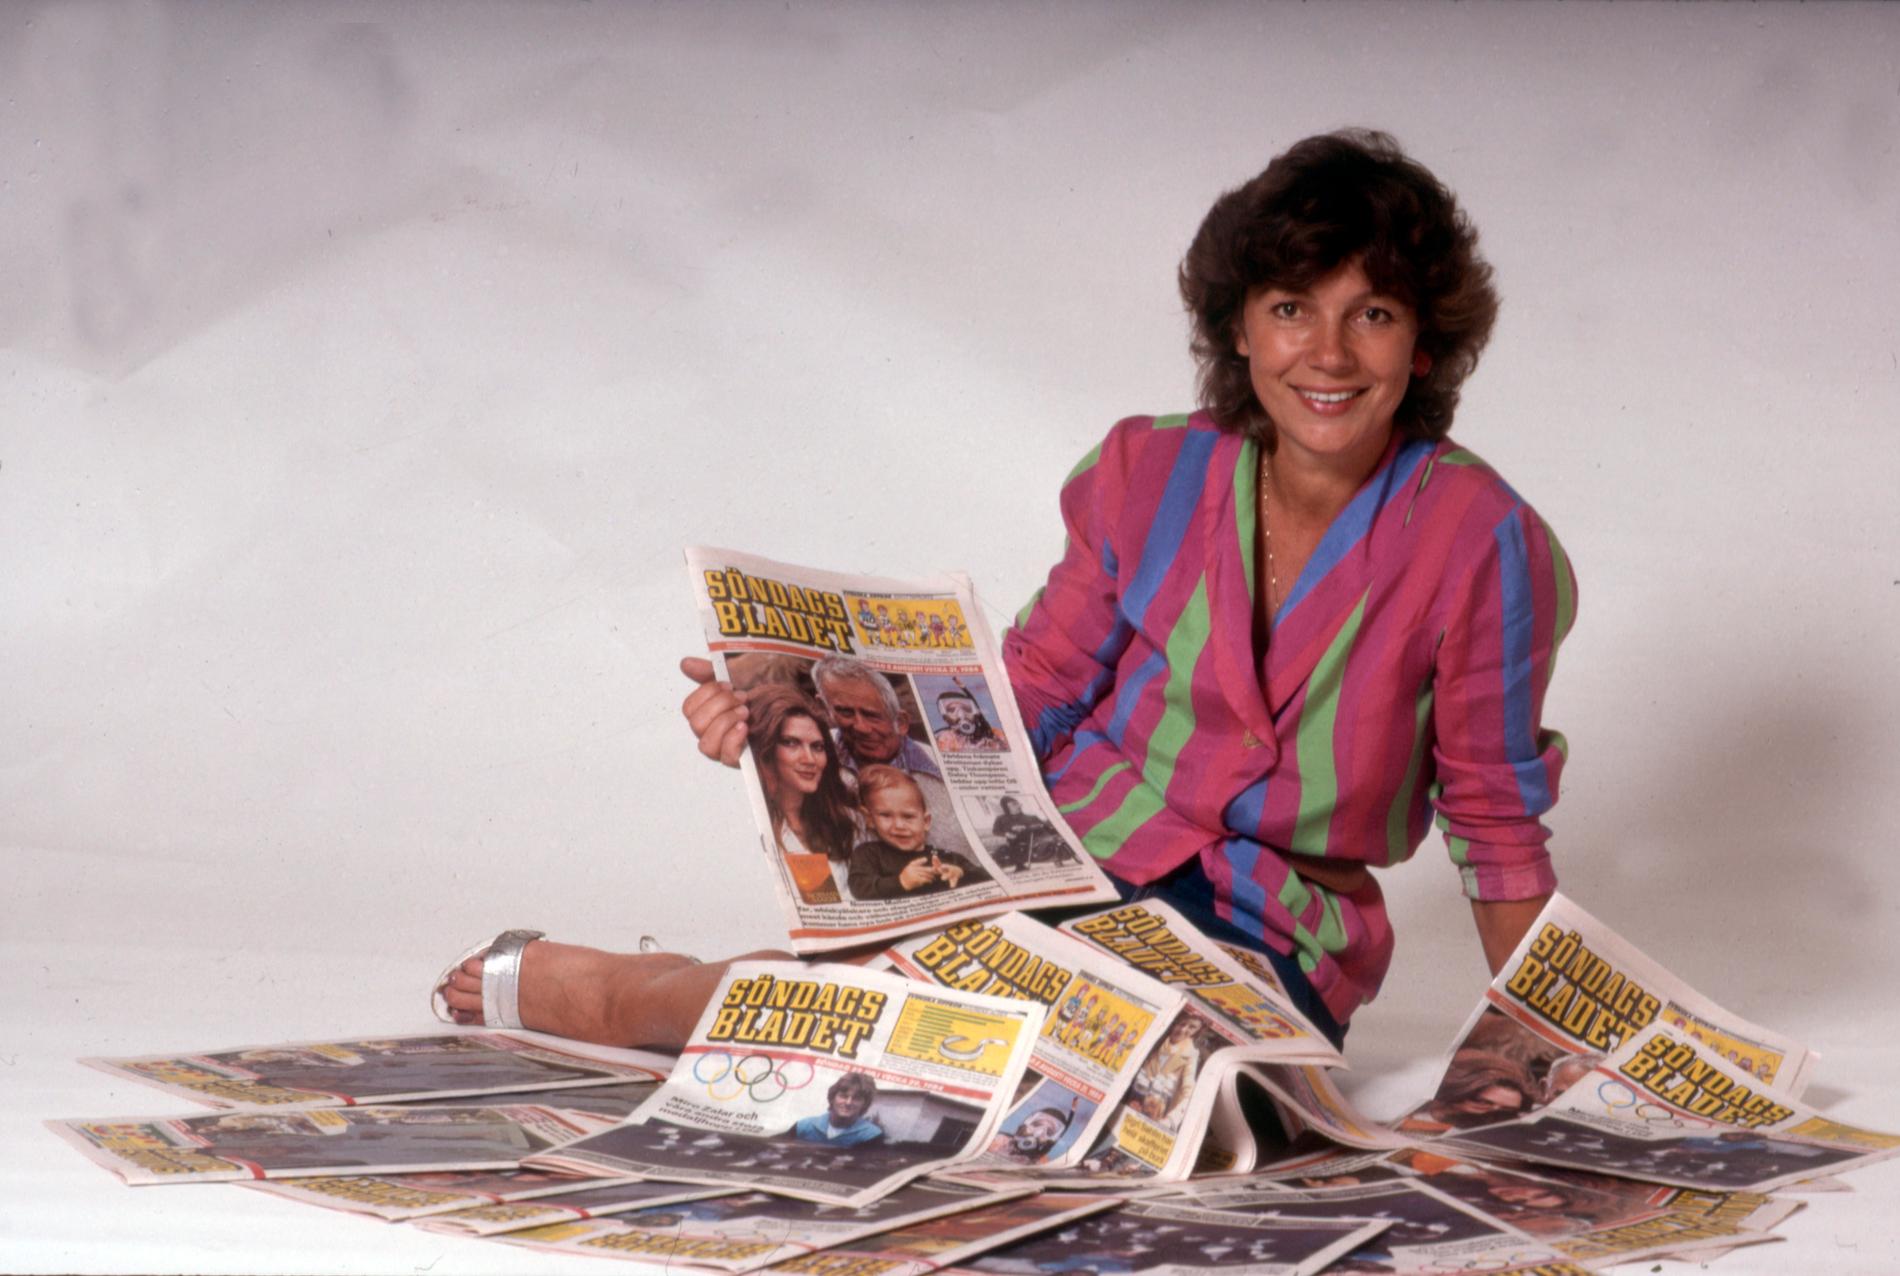 Amelia Adamo med bilagan ”Söndagsbladet” som lanserades i september 1984.